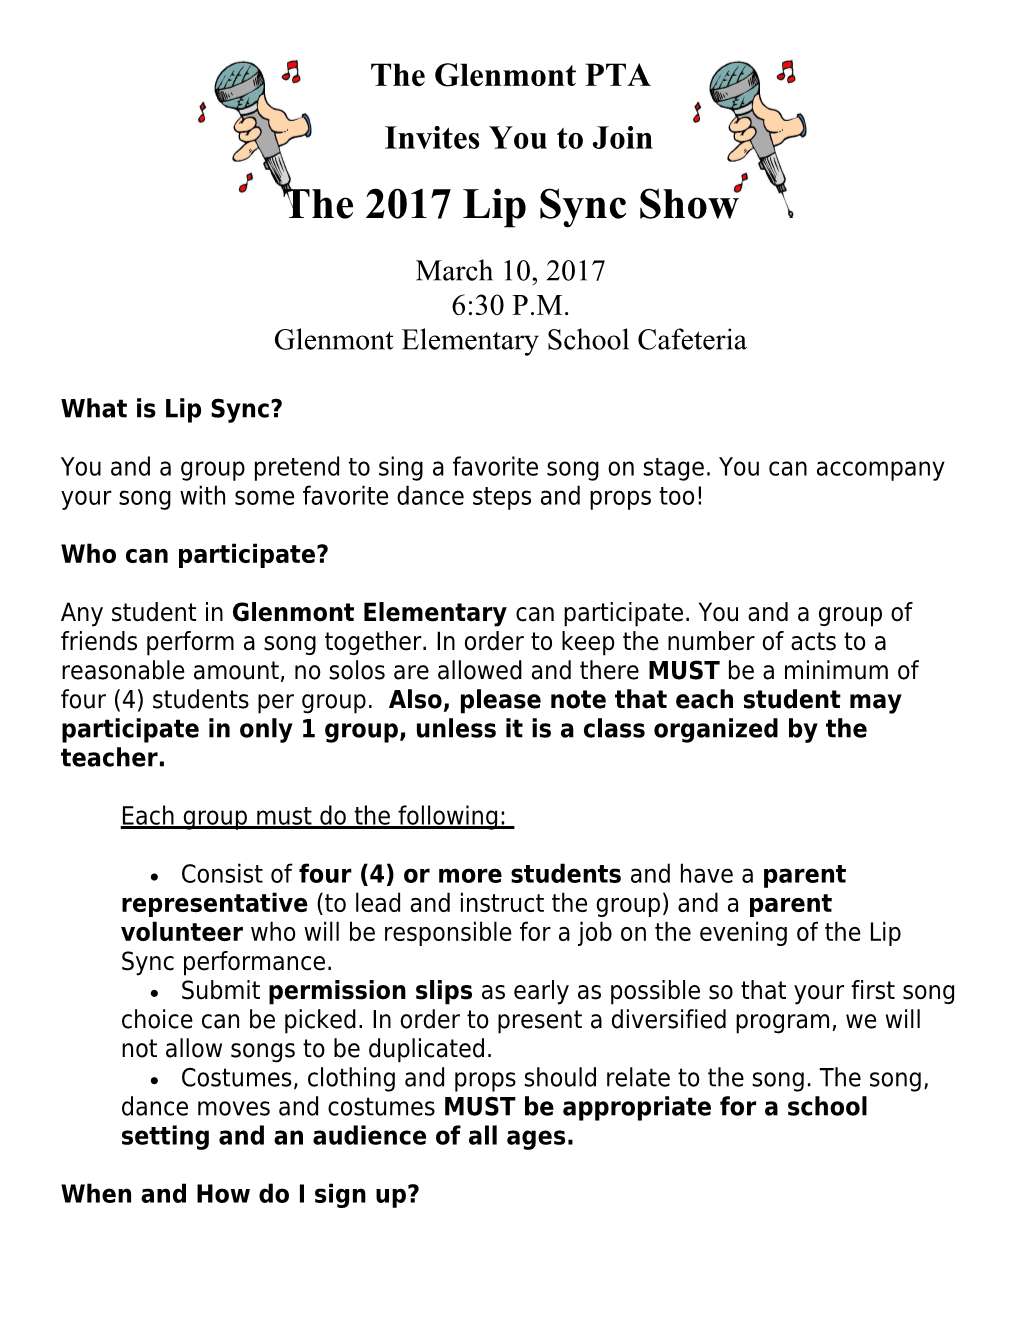 The 2017 Lip Sync Show